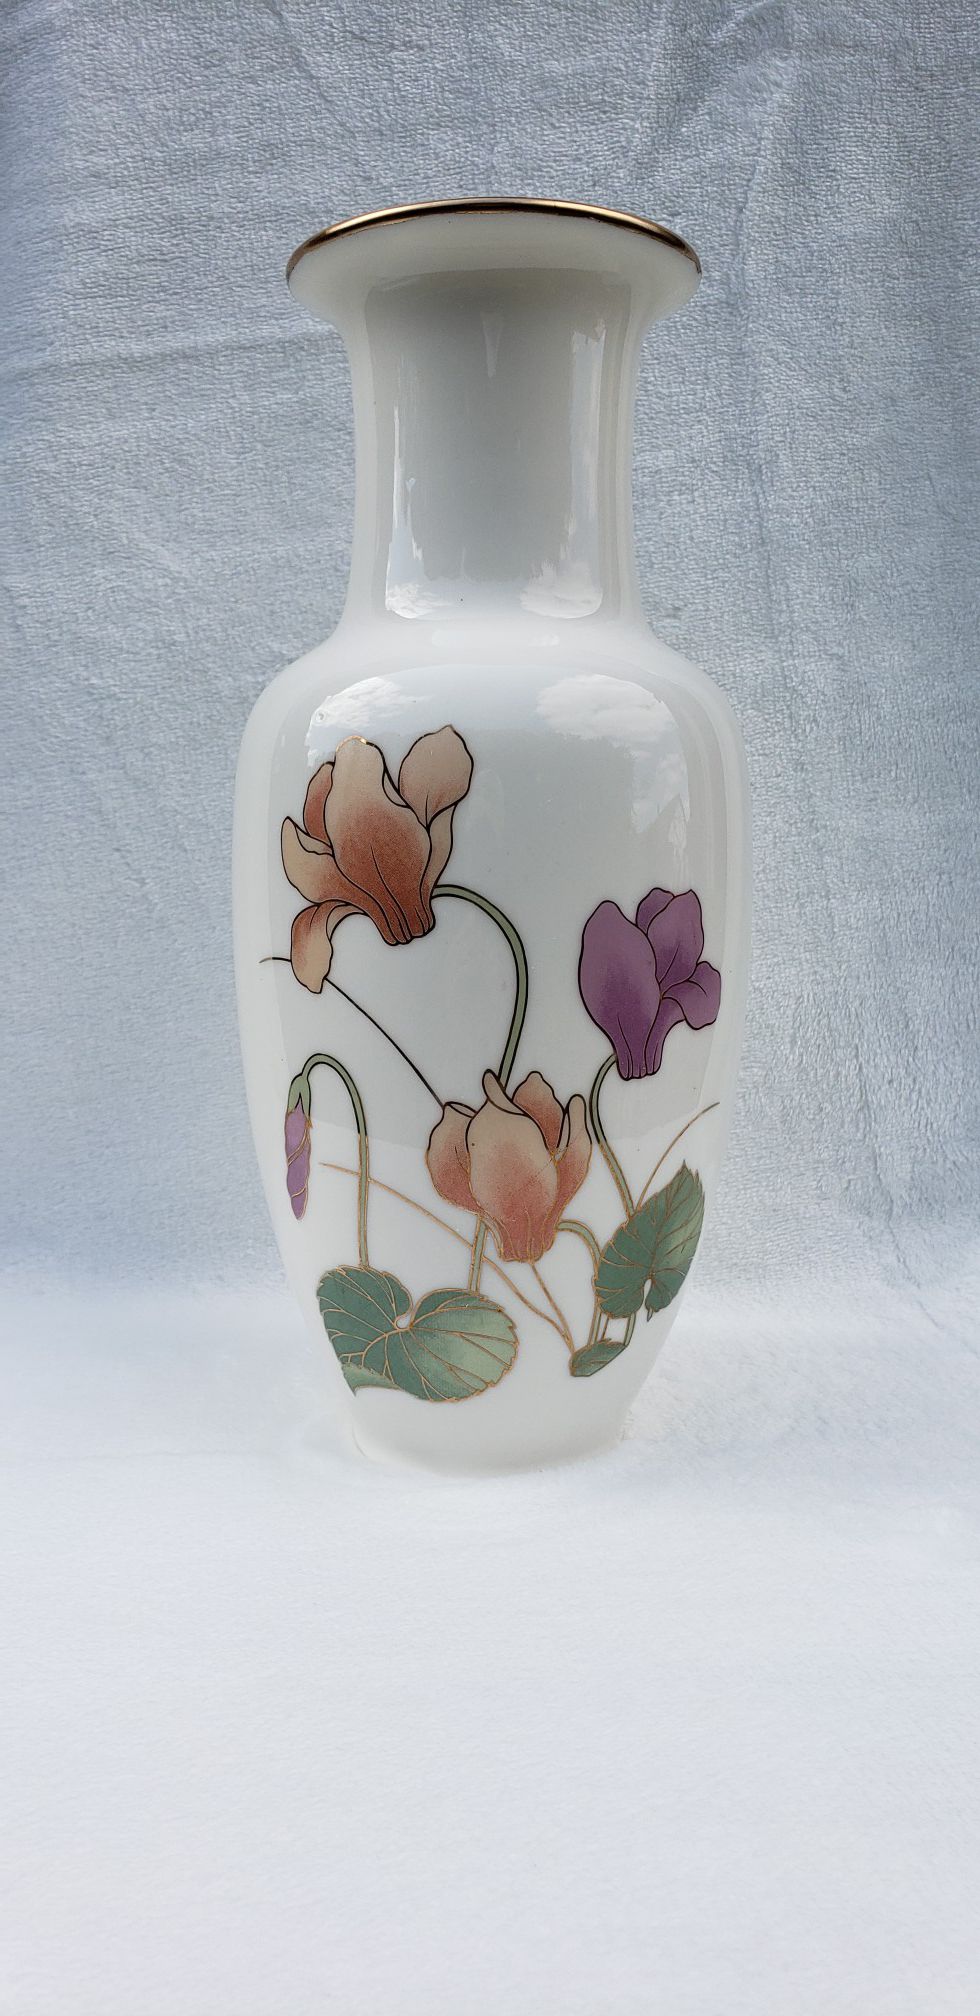 Flower vase 🌷